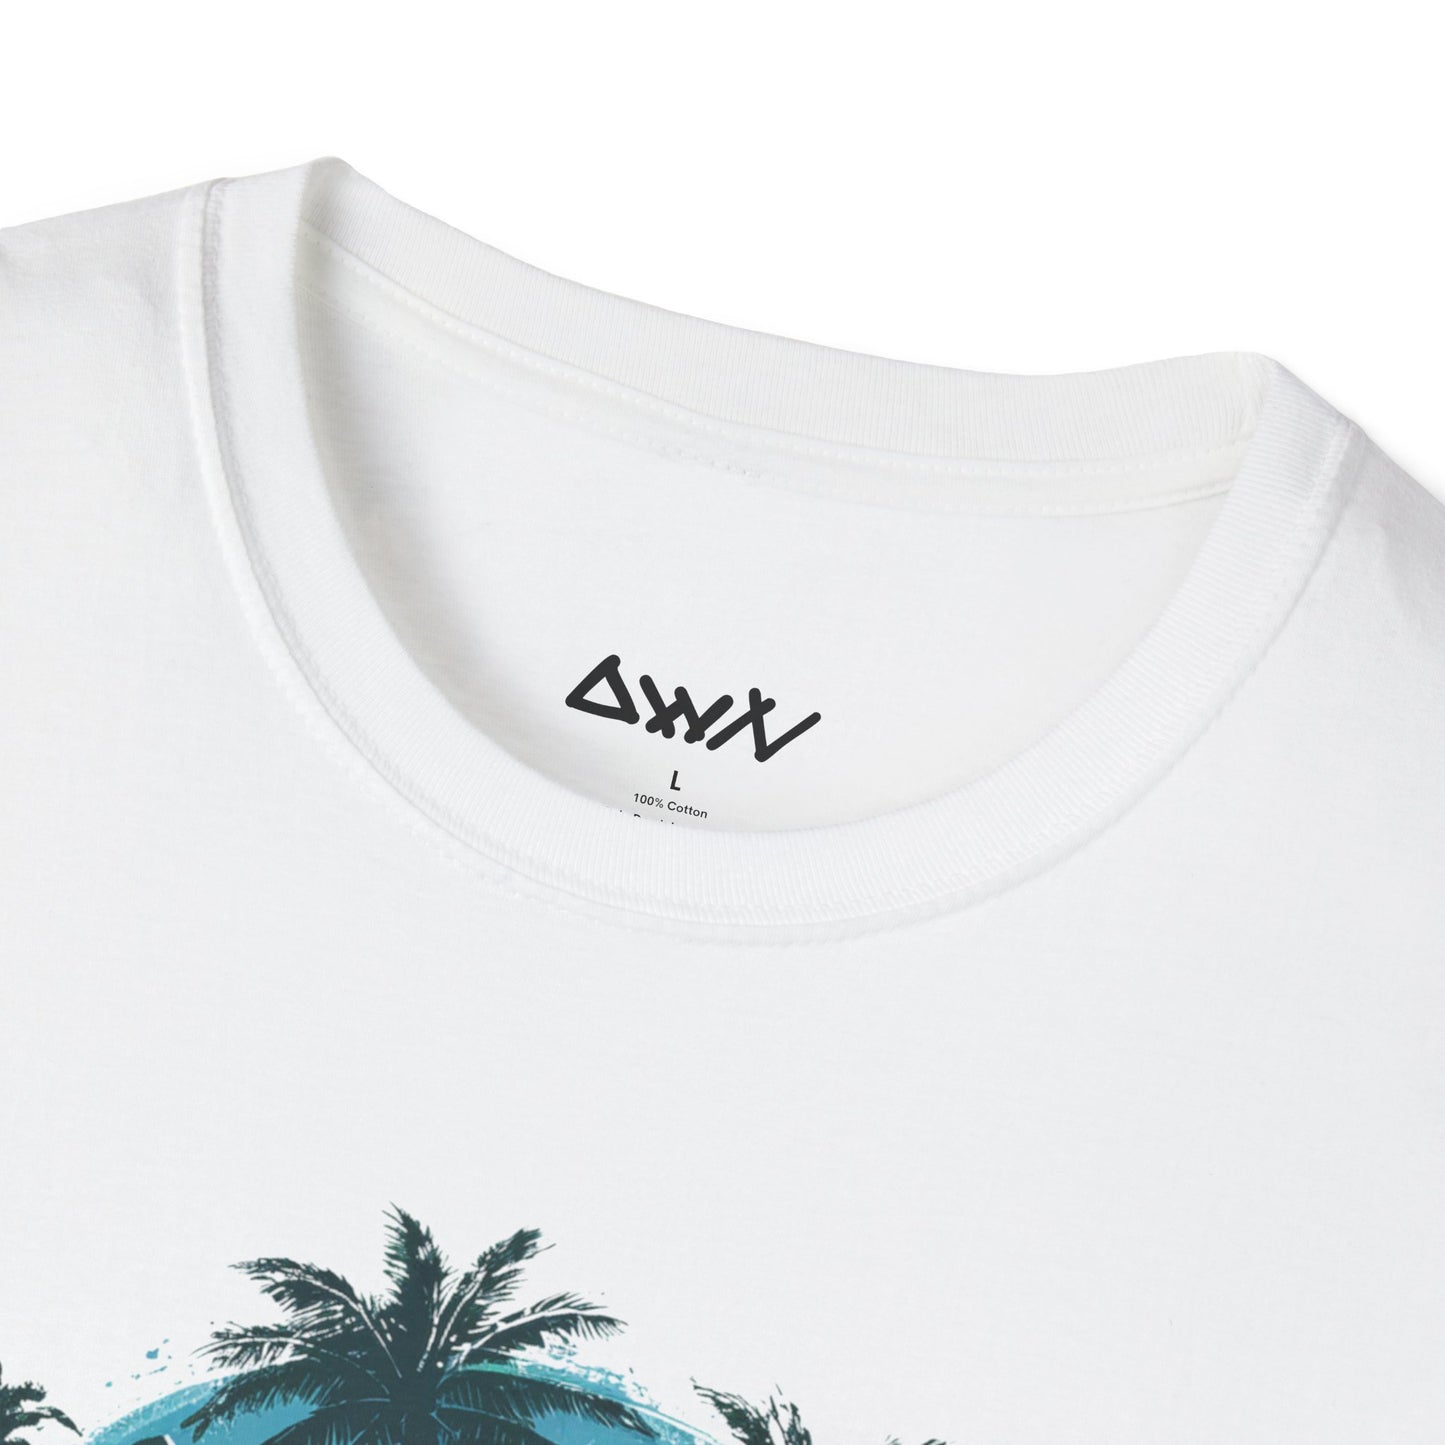 Surf's Paradise: Vintage Waves T-Shirt - DwnReverie